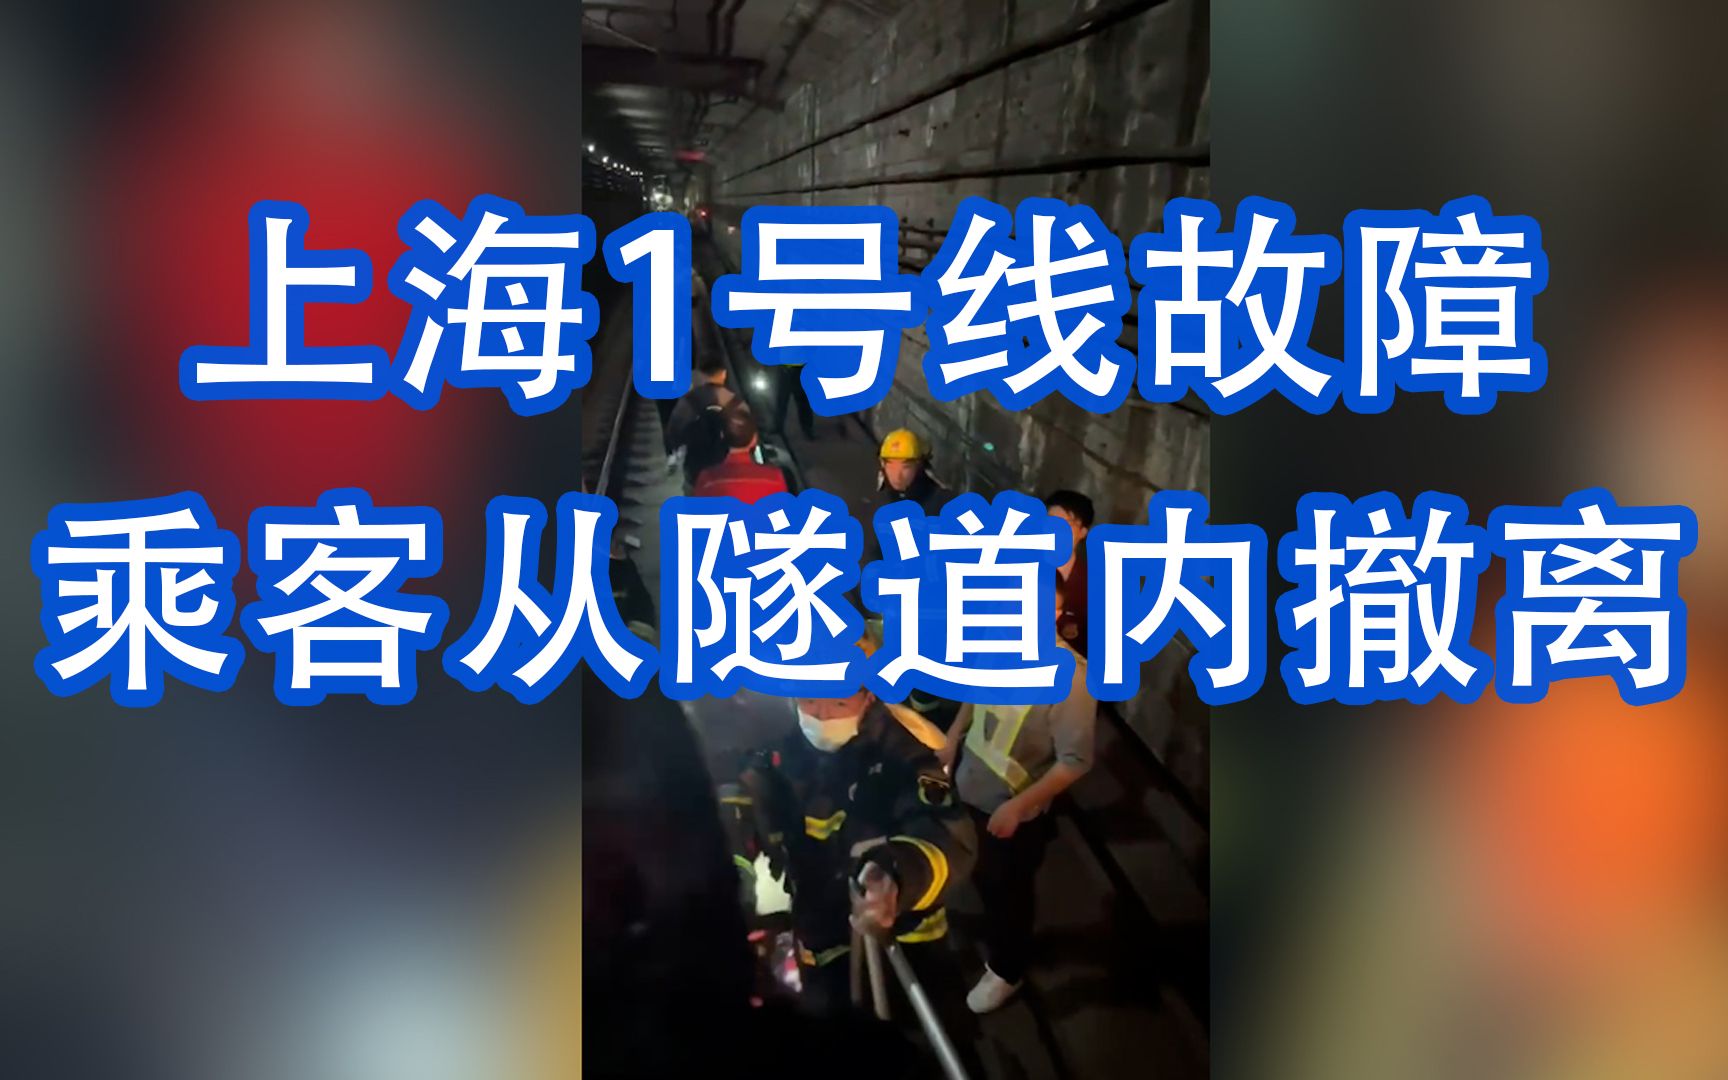 上海1号线故障乘客从隧道内撤离